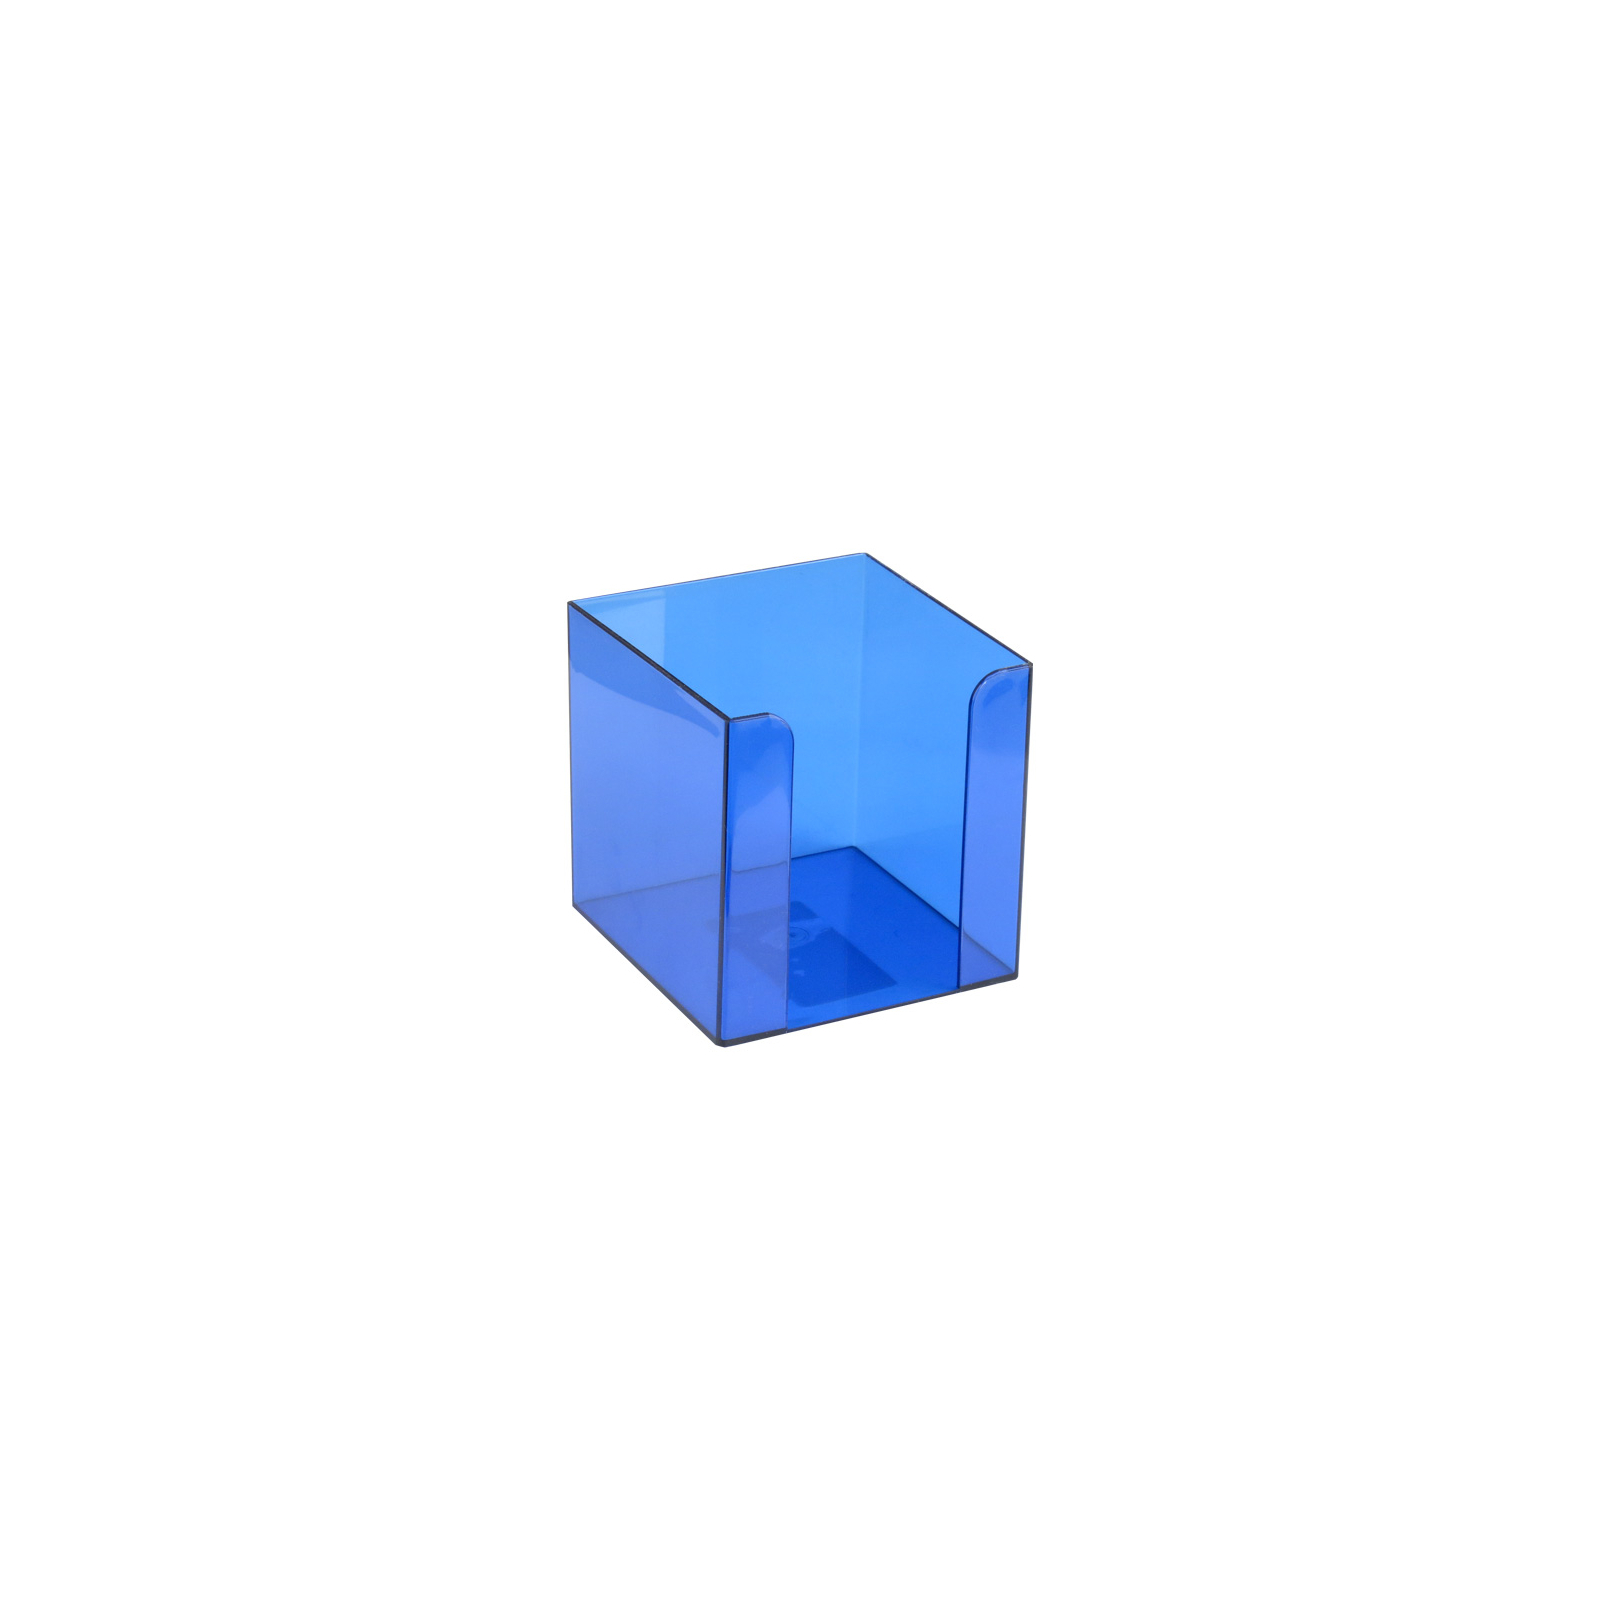 Підставка-куб для листів і паперів Delta by Axent 90x90x90 мм, blue (D4005-02)